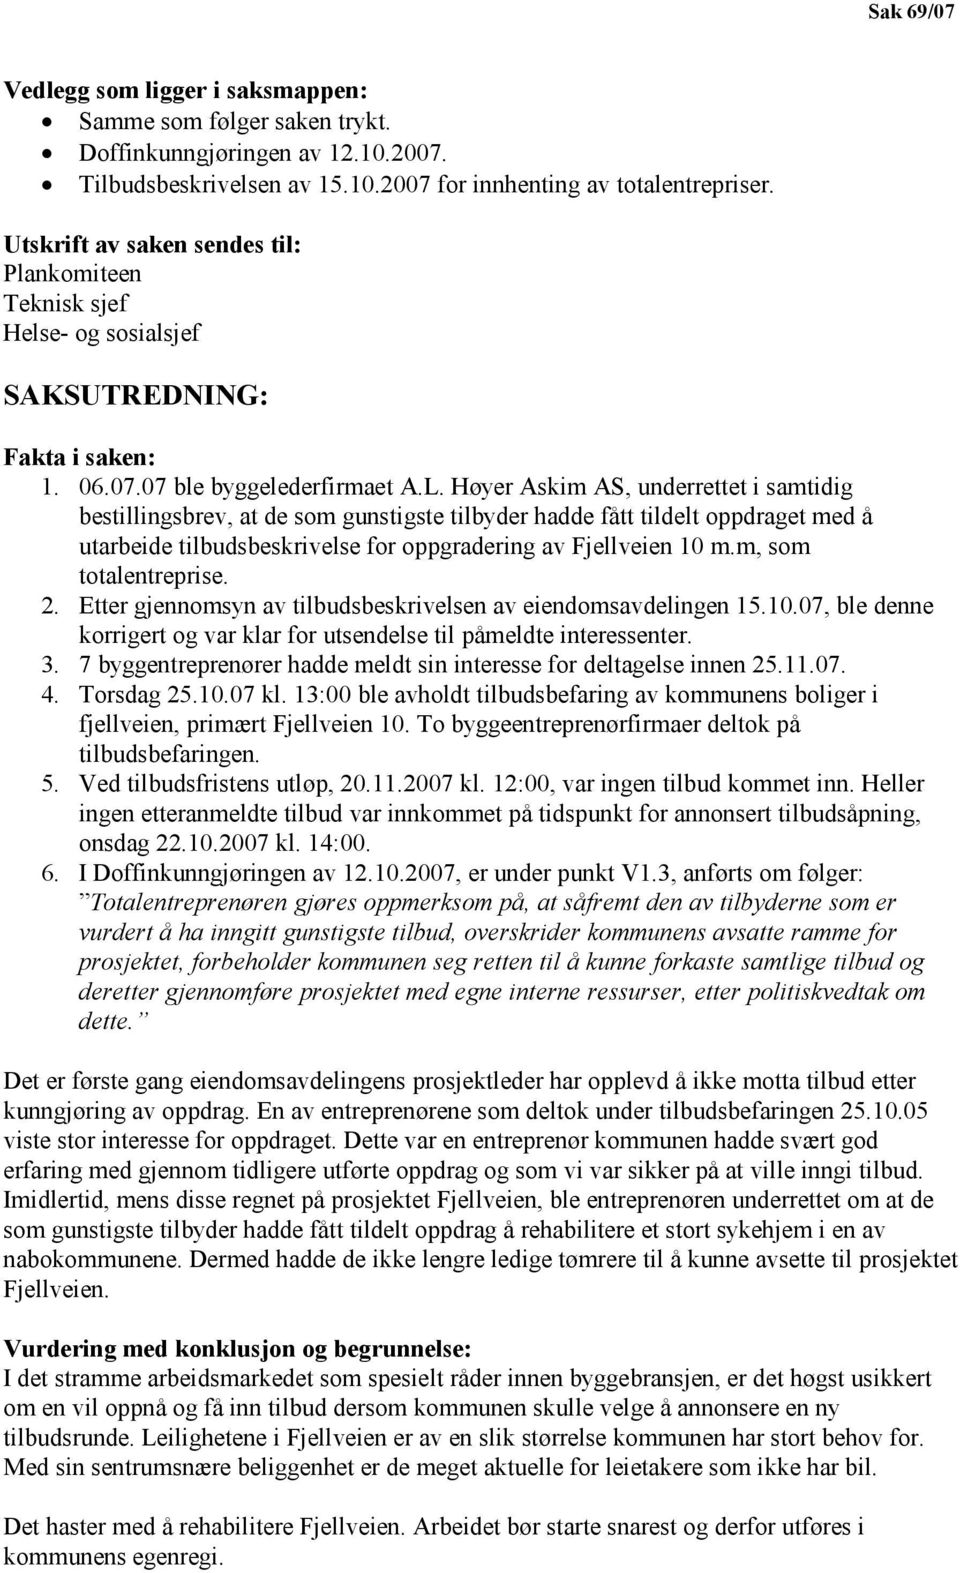 Høyer Askim AS, underrettet i samtidig bestillingsbrev, at de som gunstigste tilbyder hadde fått tildelt oppdraget med å utarbeide tilbudsbeskrivelse for oppgradering av Fjellveien 10 m.